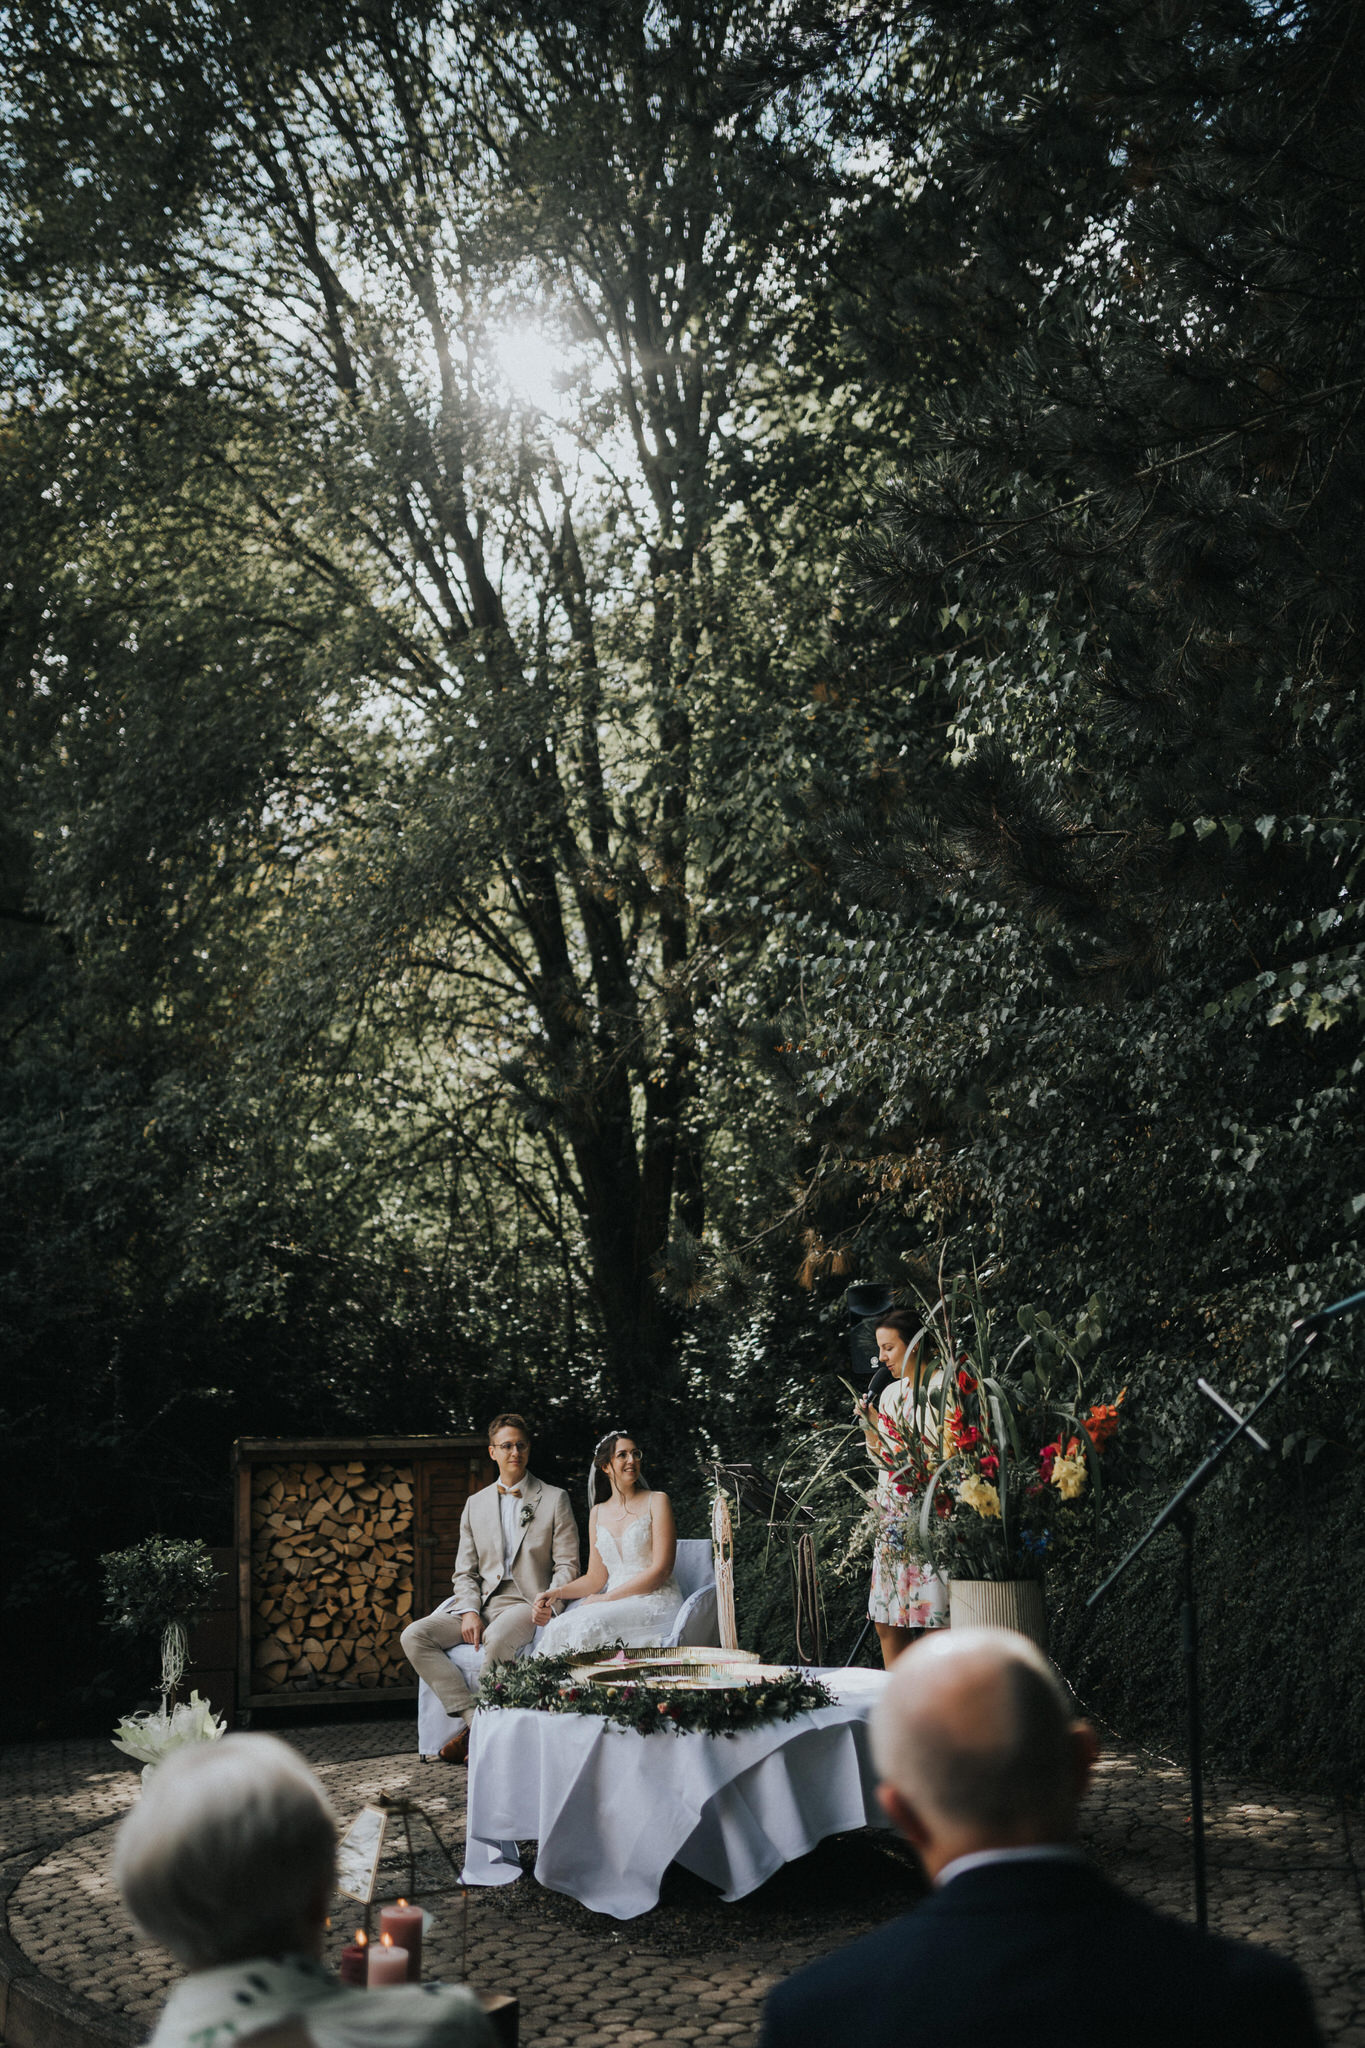 Berührende freie Trauung im Garten des Hotel Freigeist – Das Brautpaar gibt sich unter blauem Himmel das Ja-Wort, umgeben von Familie und Freunden in einer malerischen Gartenkulisse.